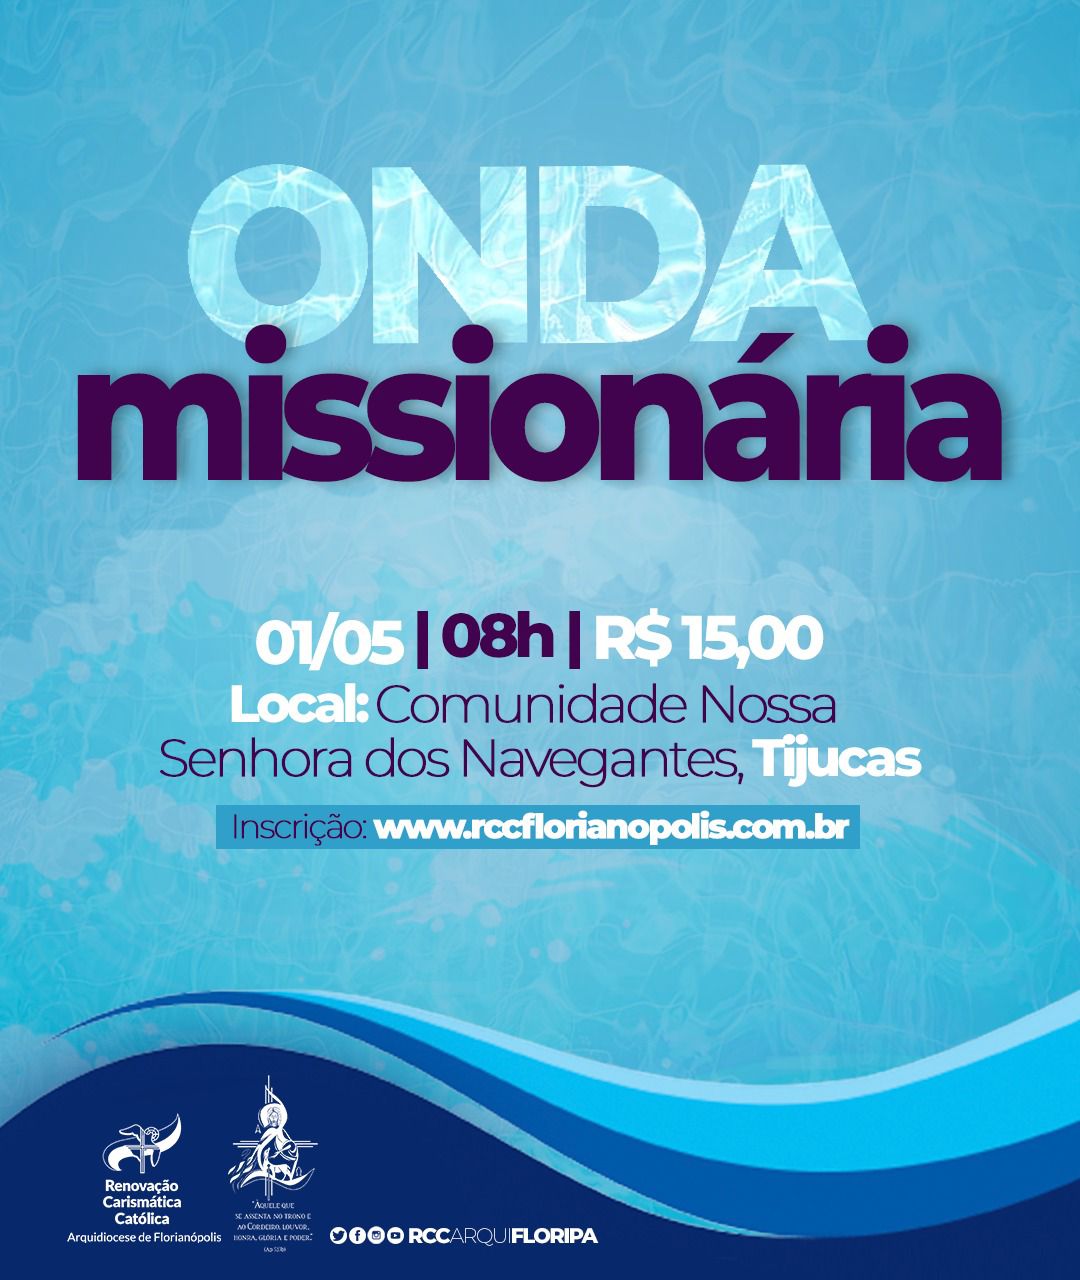 RCC Arquidiocese de Florianópolis promove a primeira Onda Missionária